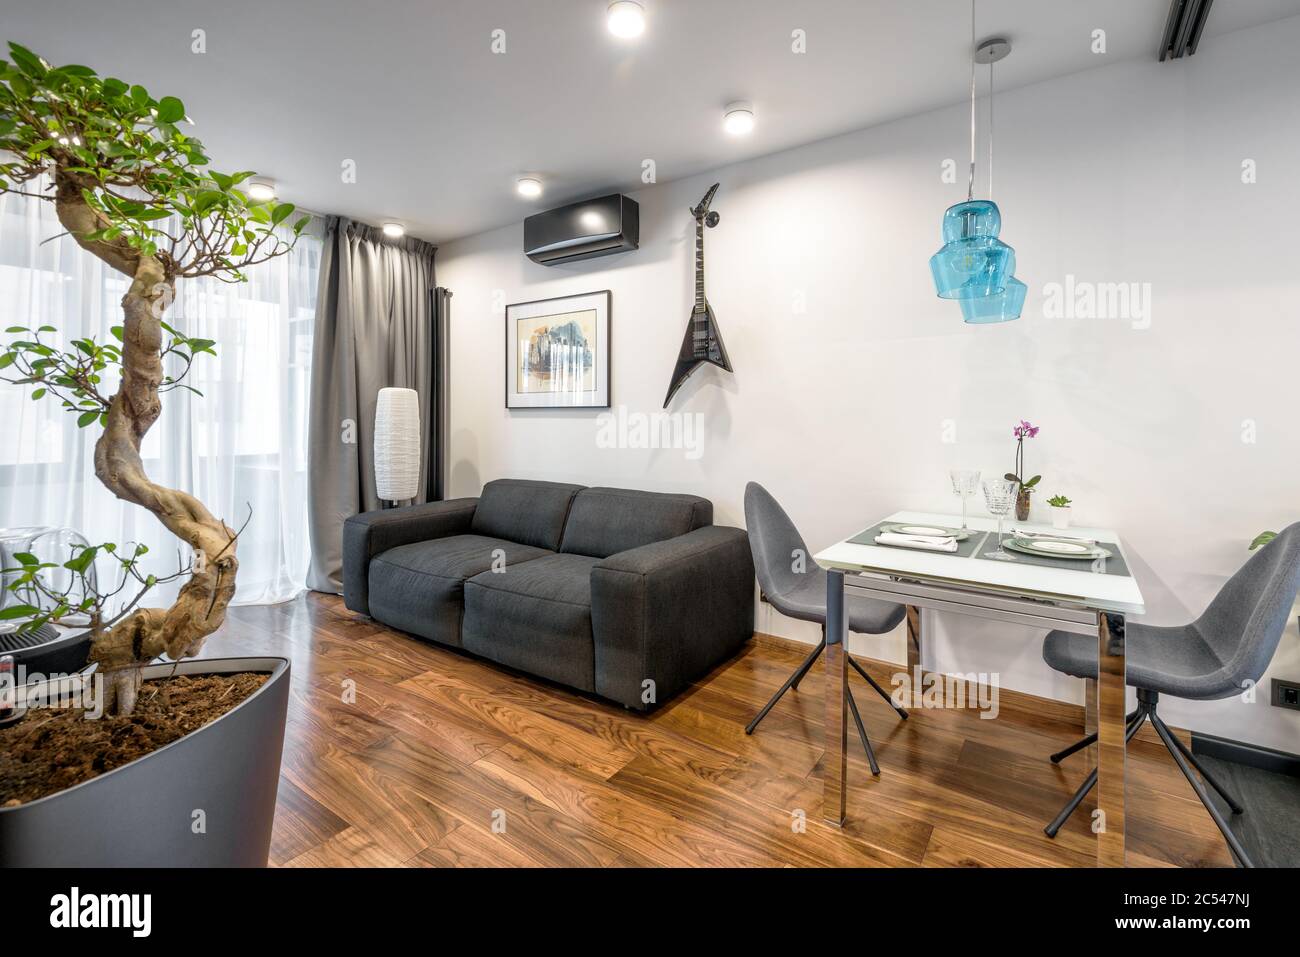 Moskau - 25. März 2018: Moderne Wohneinrichtung mit Couch, Tisch und Pflanzen. Schöne minimalistische Inneneinrichtung des Wohnzimmers mit weißen Wänden. Luxus Stockfoto